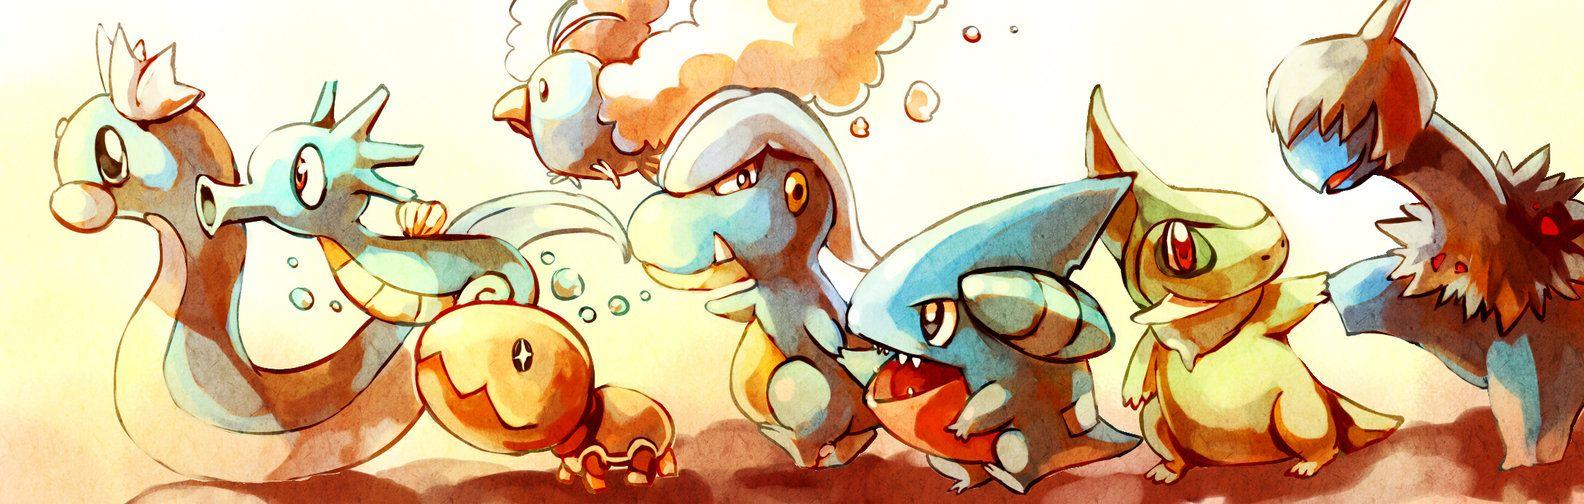 Pokemon, Baby Dragons By Sa Dui